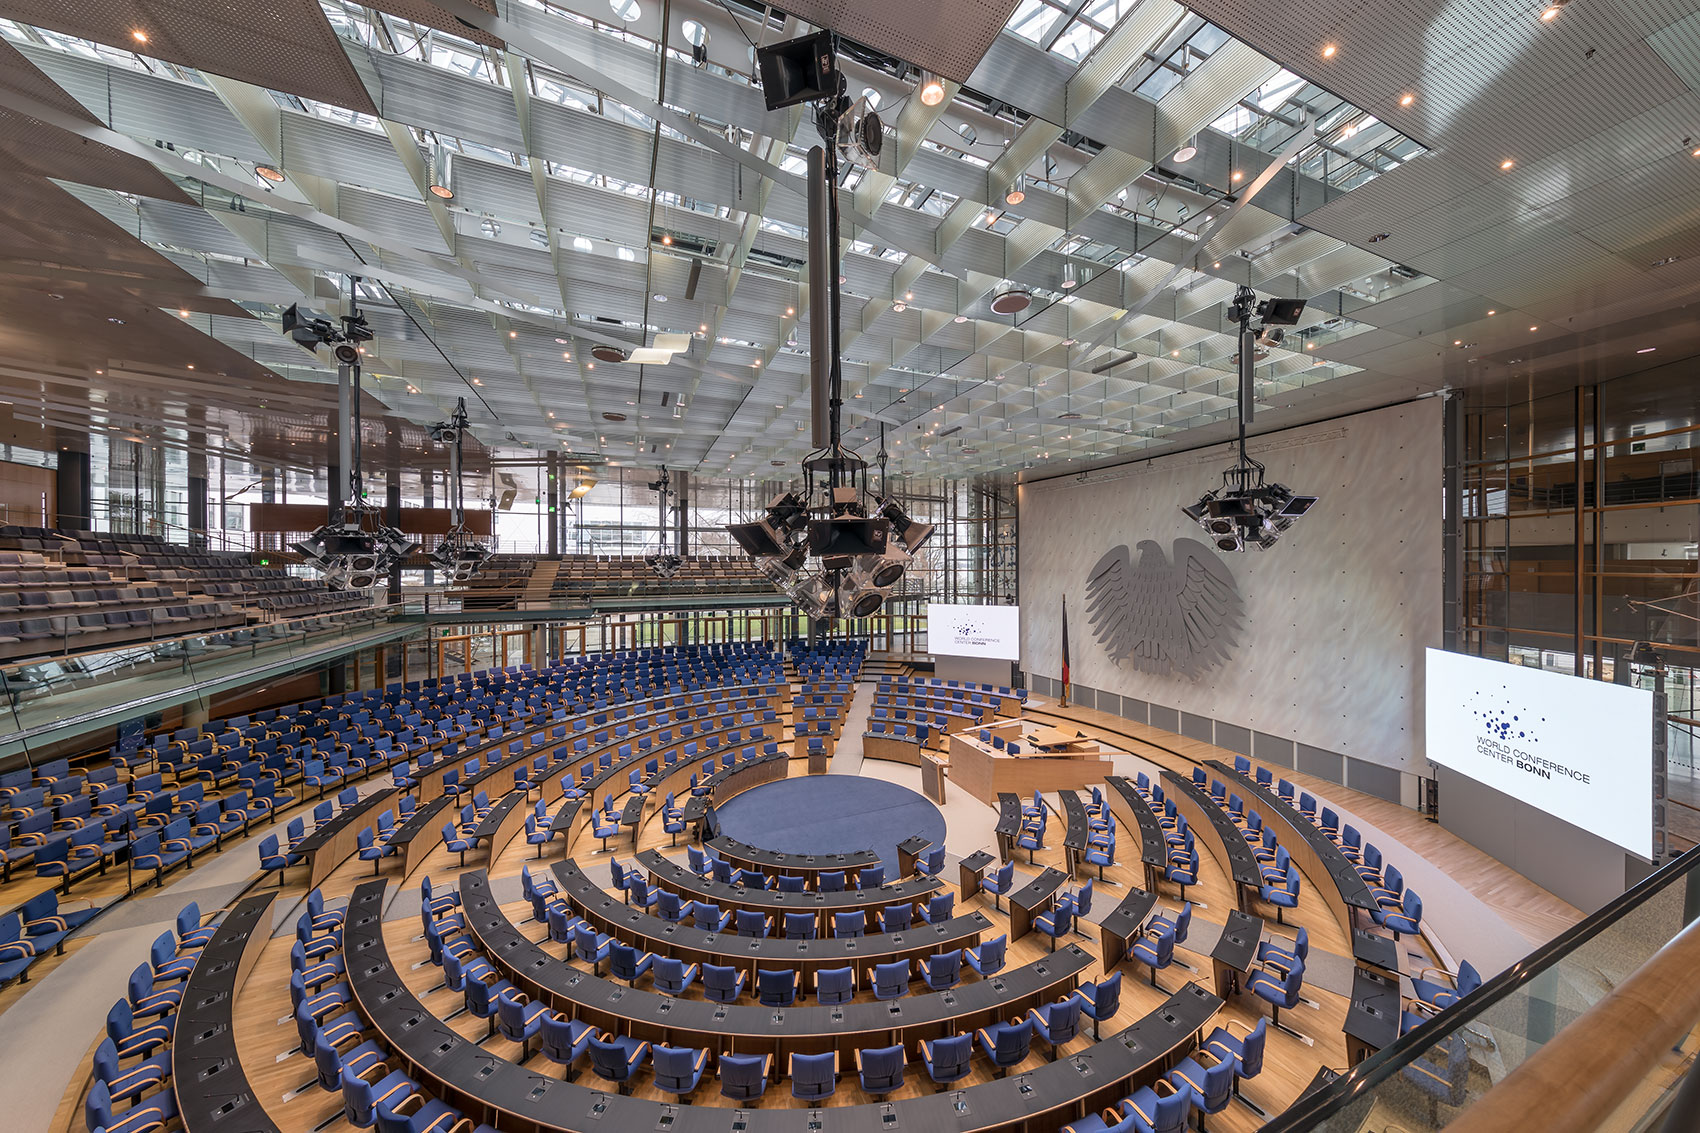 Konferenzsaal des World Conference Center Bonn: Viele in einem Kreis angeordnete Tisch- und Stuhlreihen. Licht- und Tontechniksäulen hängen von der Decke